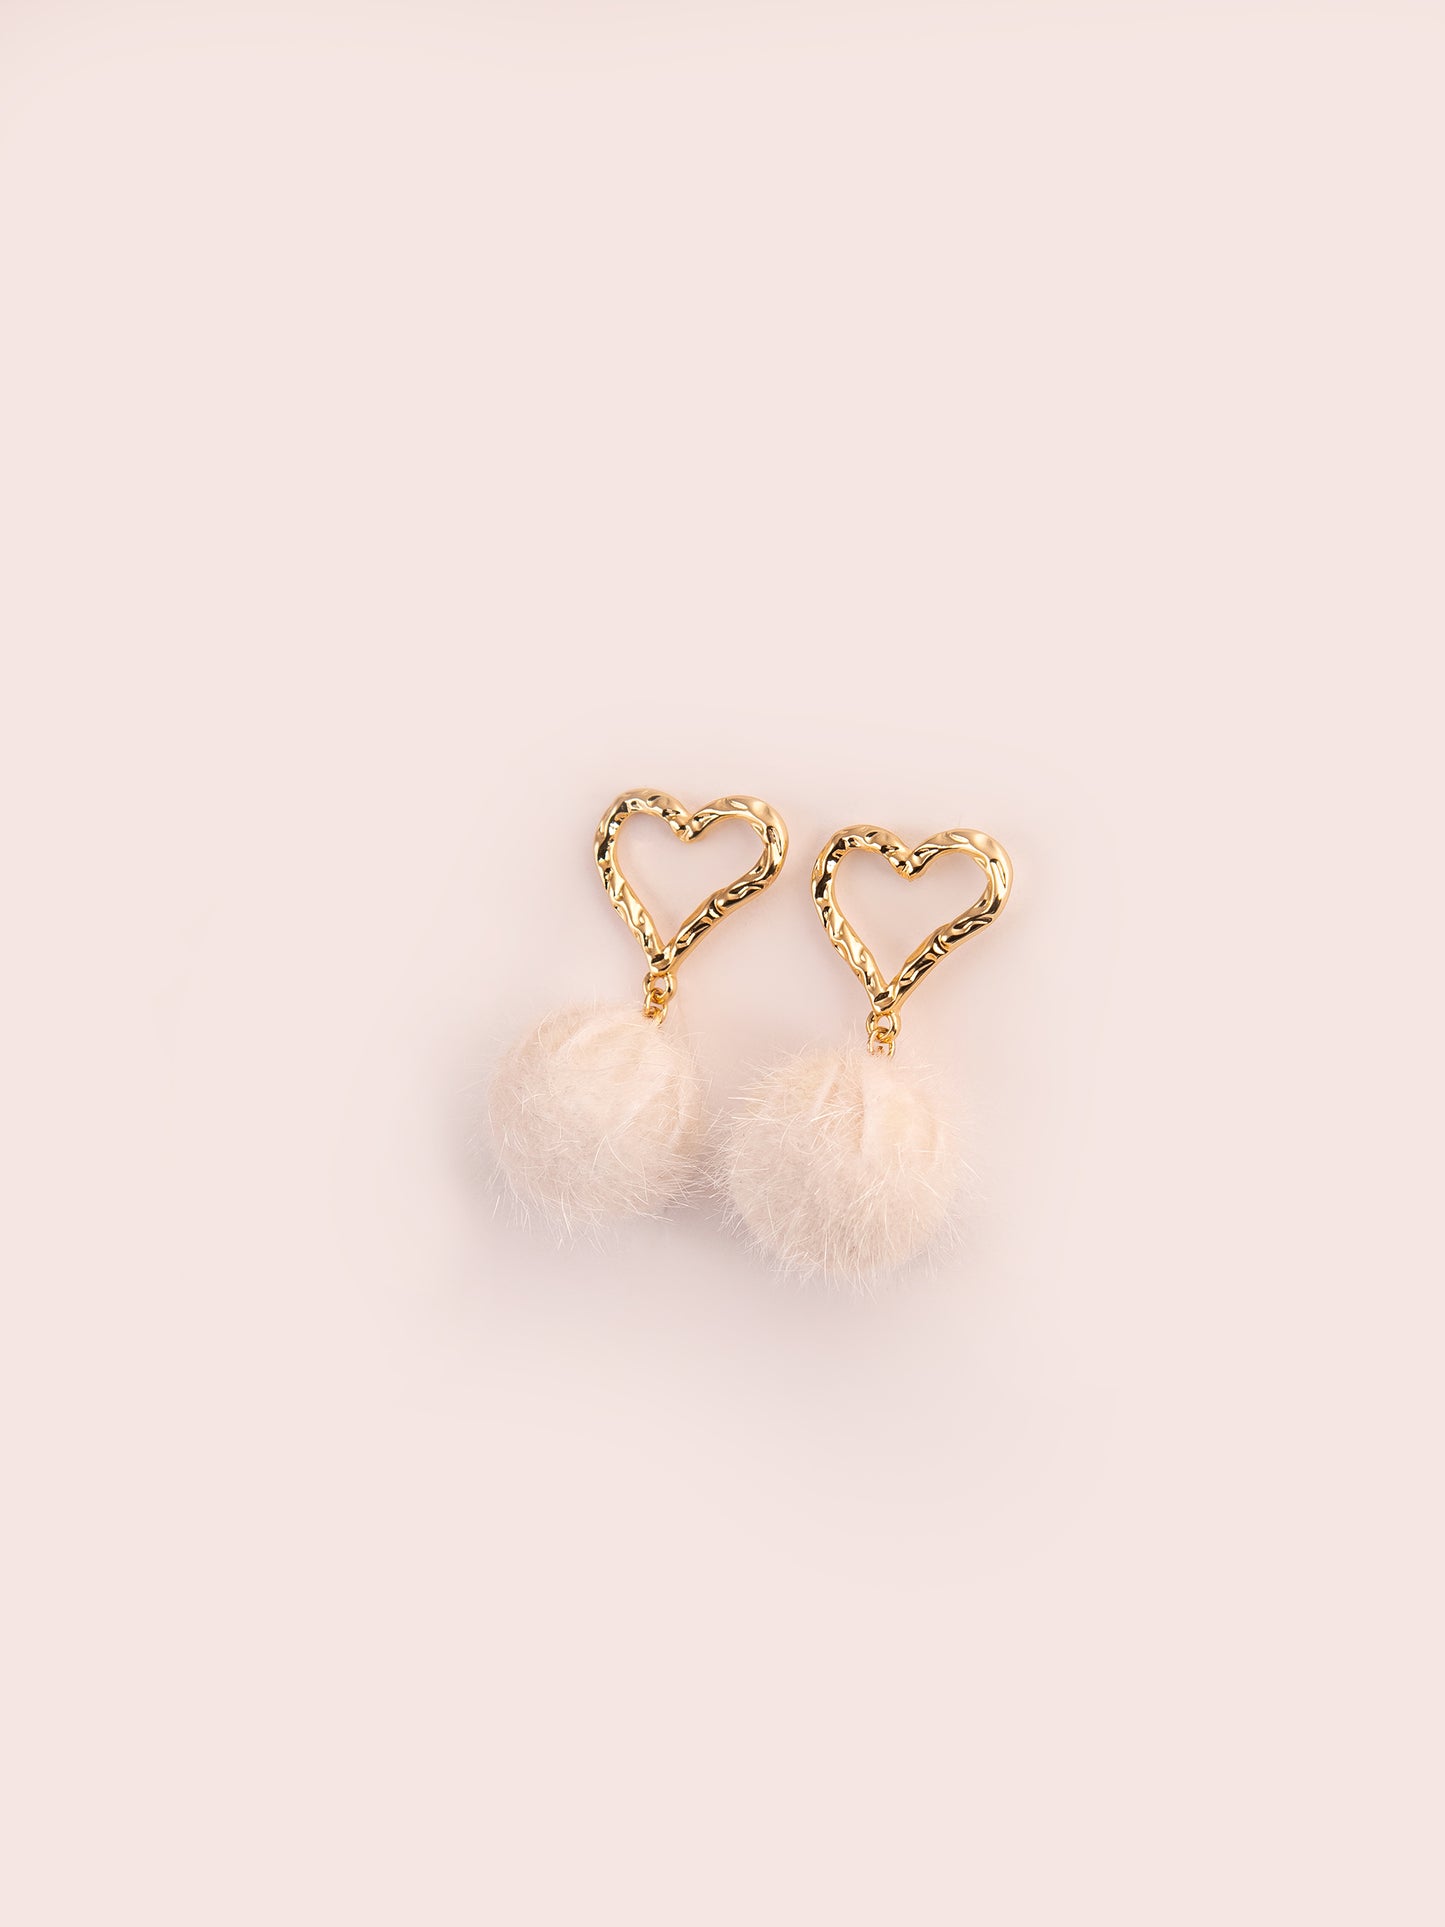 Heart Pompom Earrings